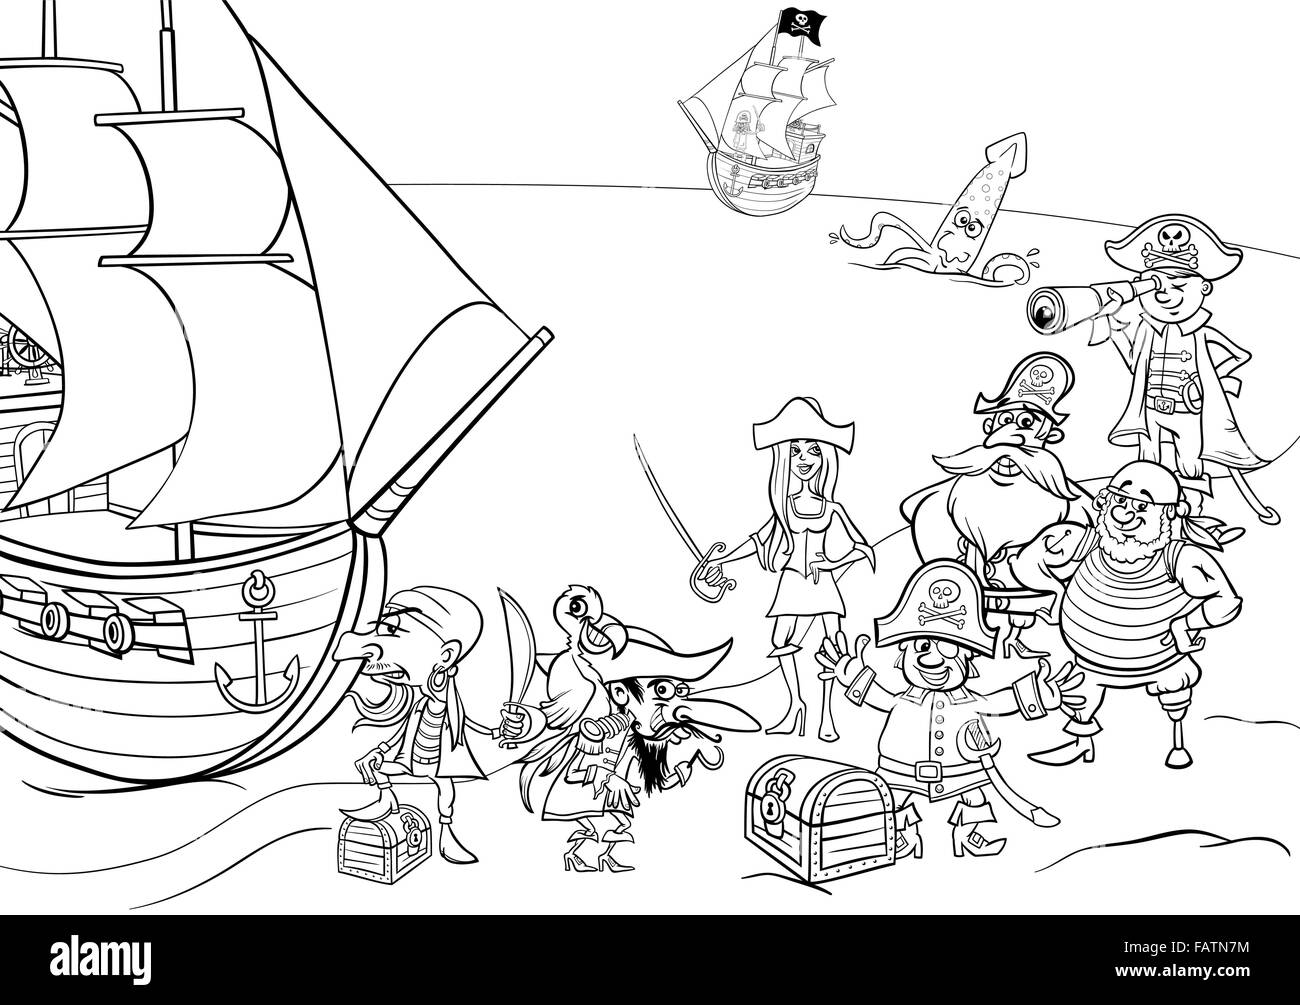 Dessin animé en noir et blanc Illustrations de Fantasy Personnages Pirate avec bateau sur l'île au trésor pour Coloring Book Illustration de Vecteur